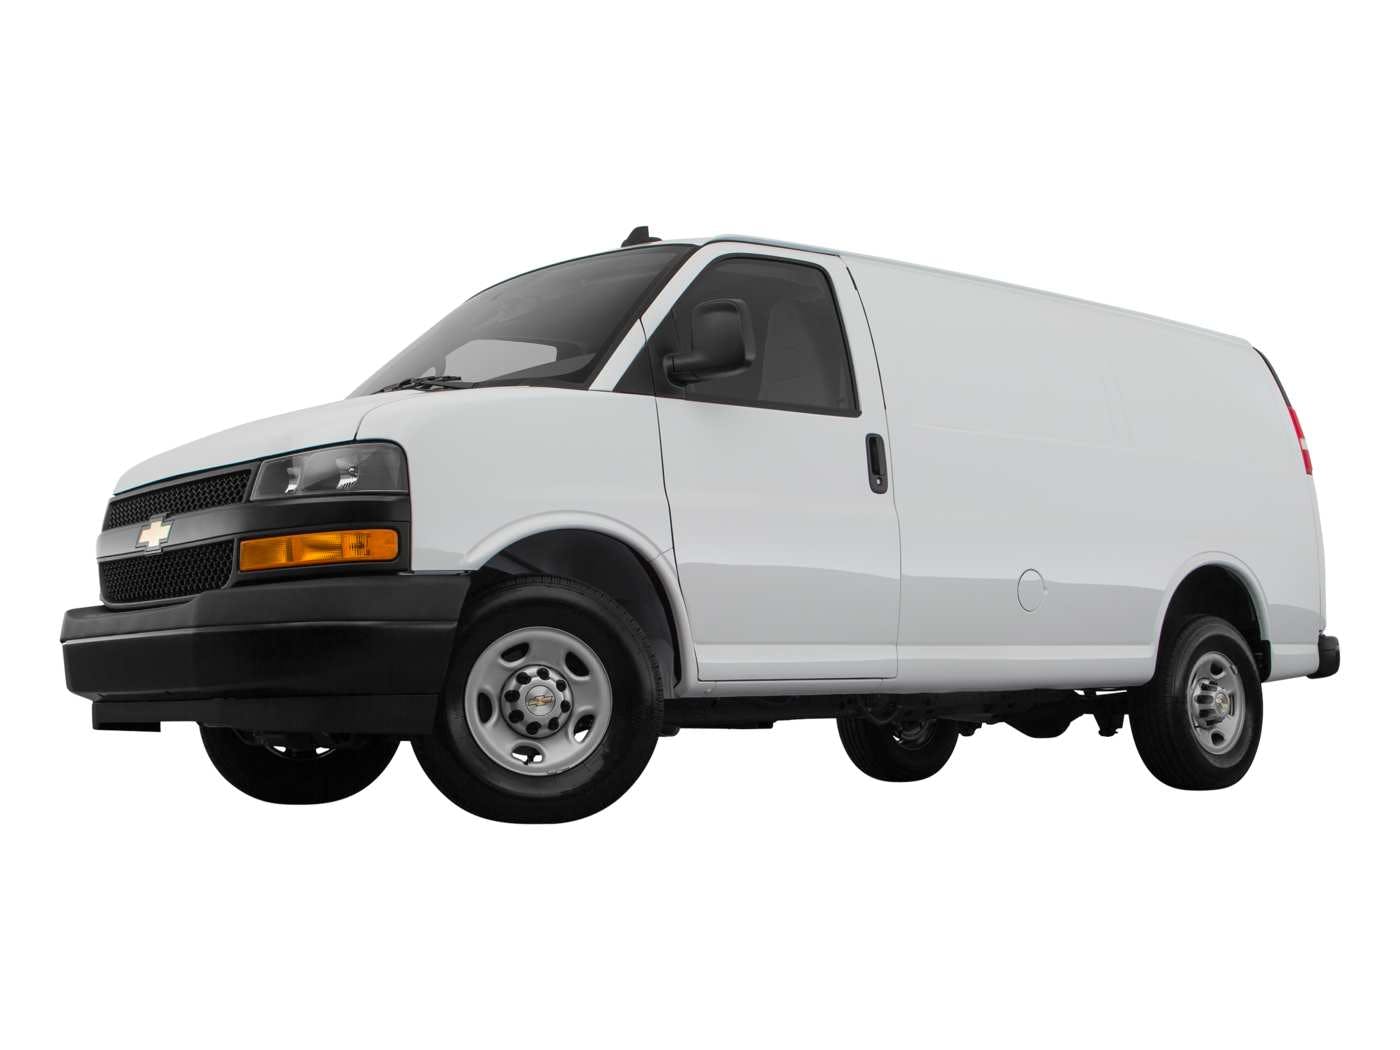 2018 Chevrolet Express Cargo Van Review | Pricing, Trims & Photos - TrueCar